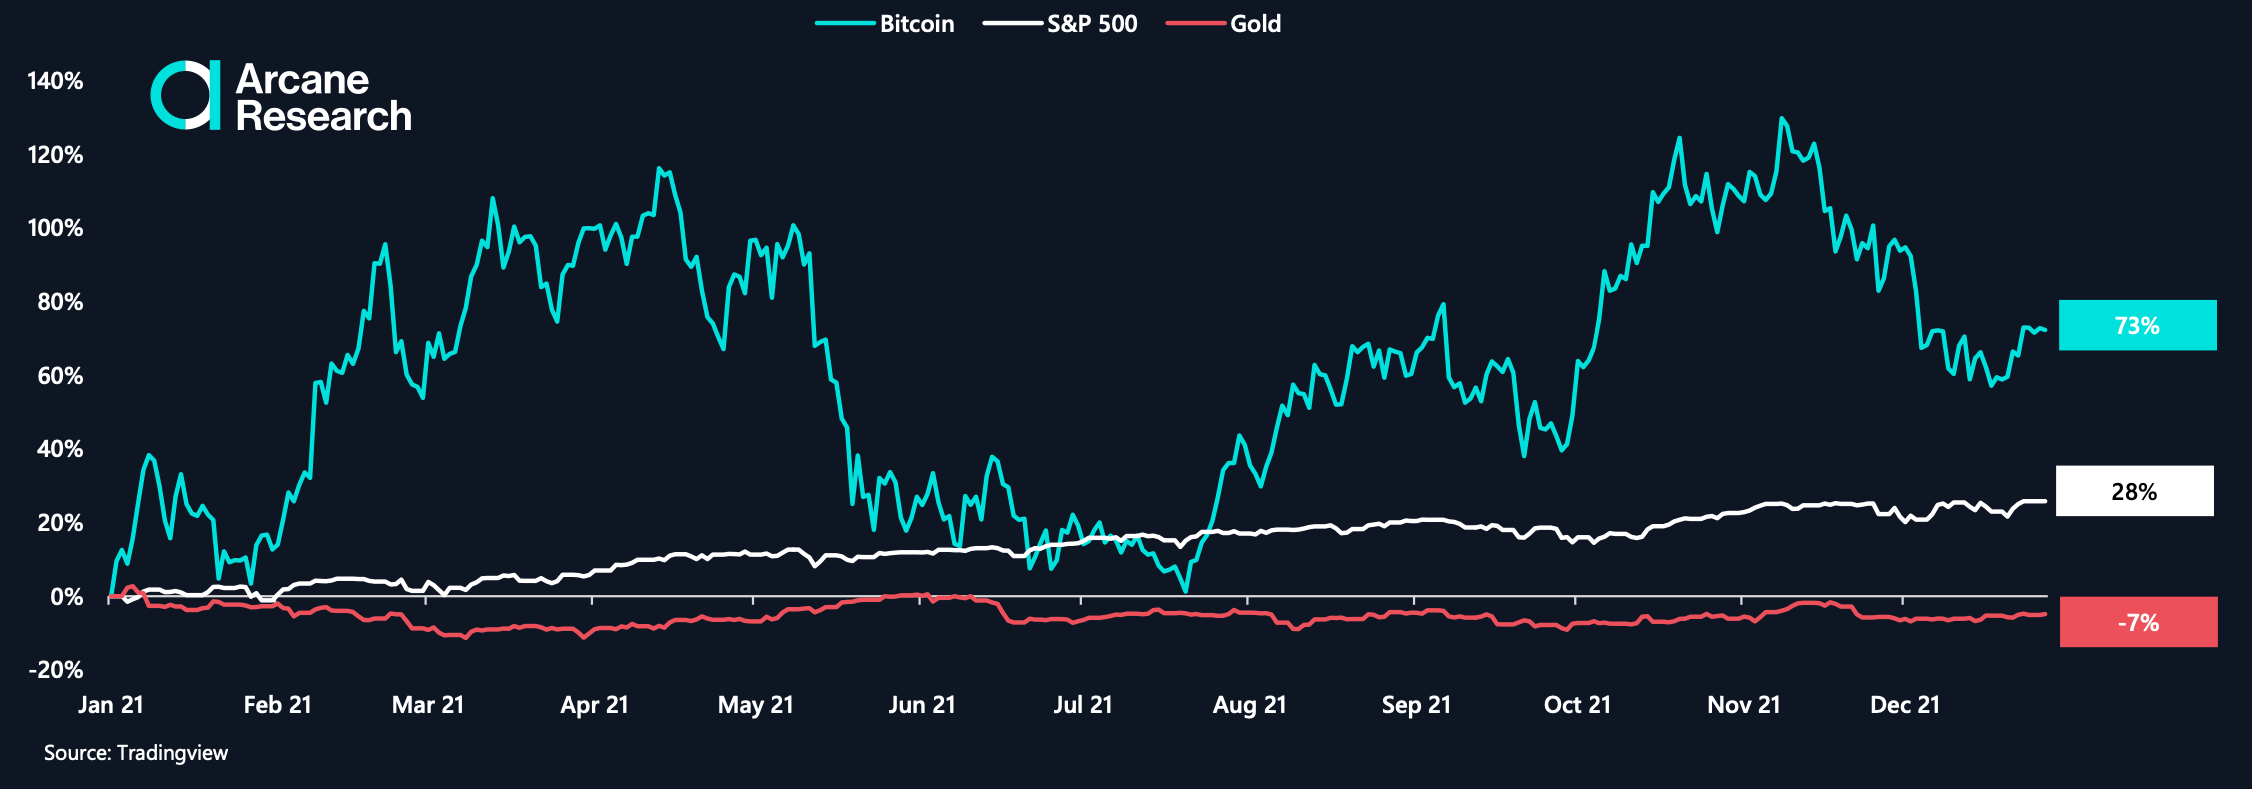 Bitcoin bước vào năm mới với một cú nổ; đánh bại thị trường chứng khoán, vàng lần thứ ba liên tiếp 7